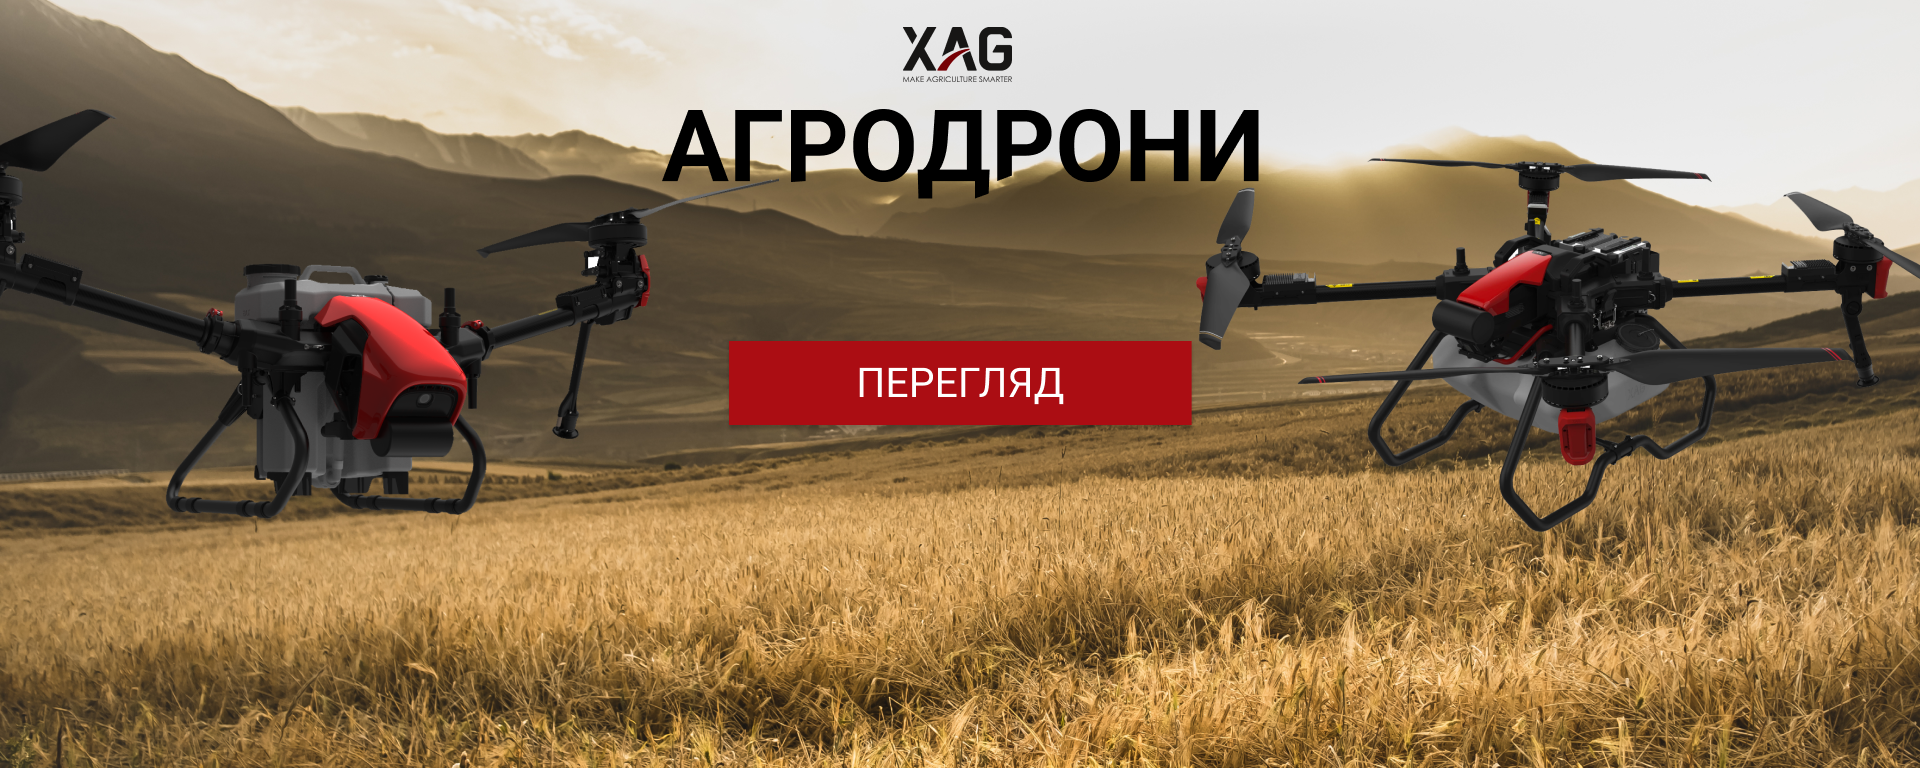 Агродрони XAG дрони-обприскувачі